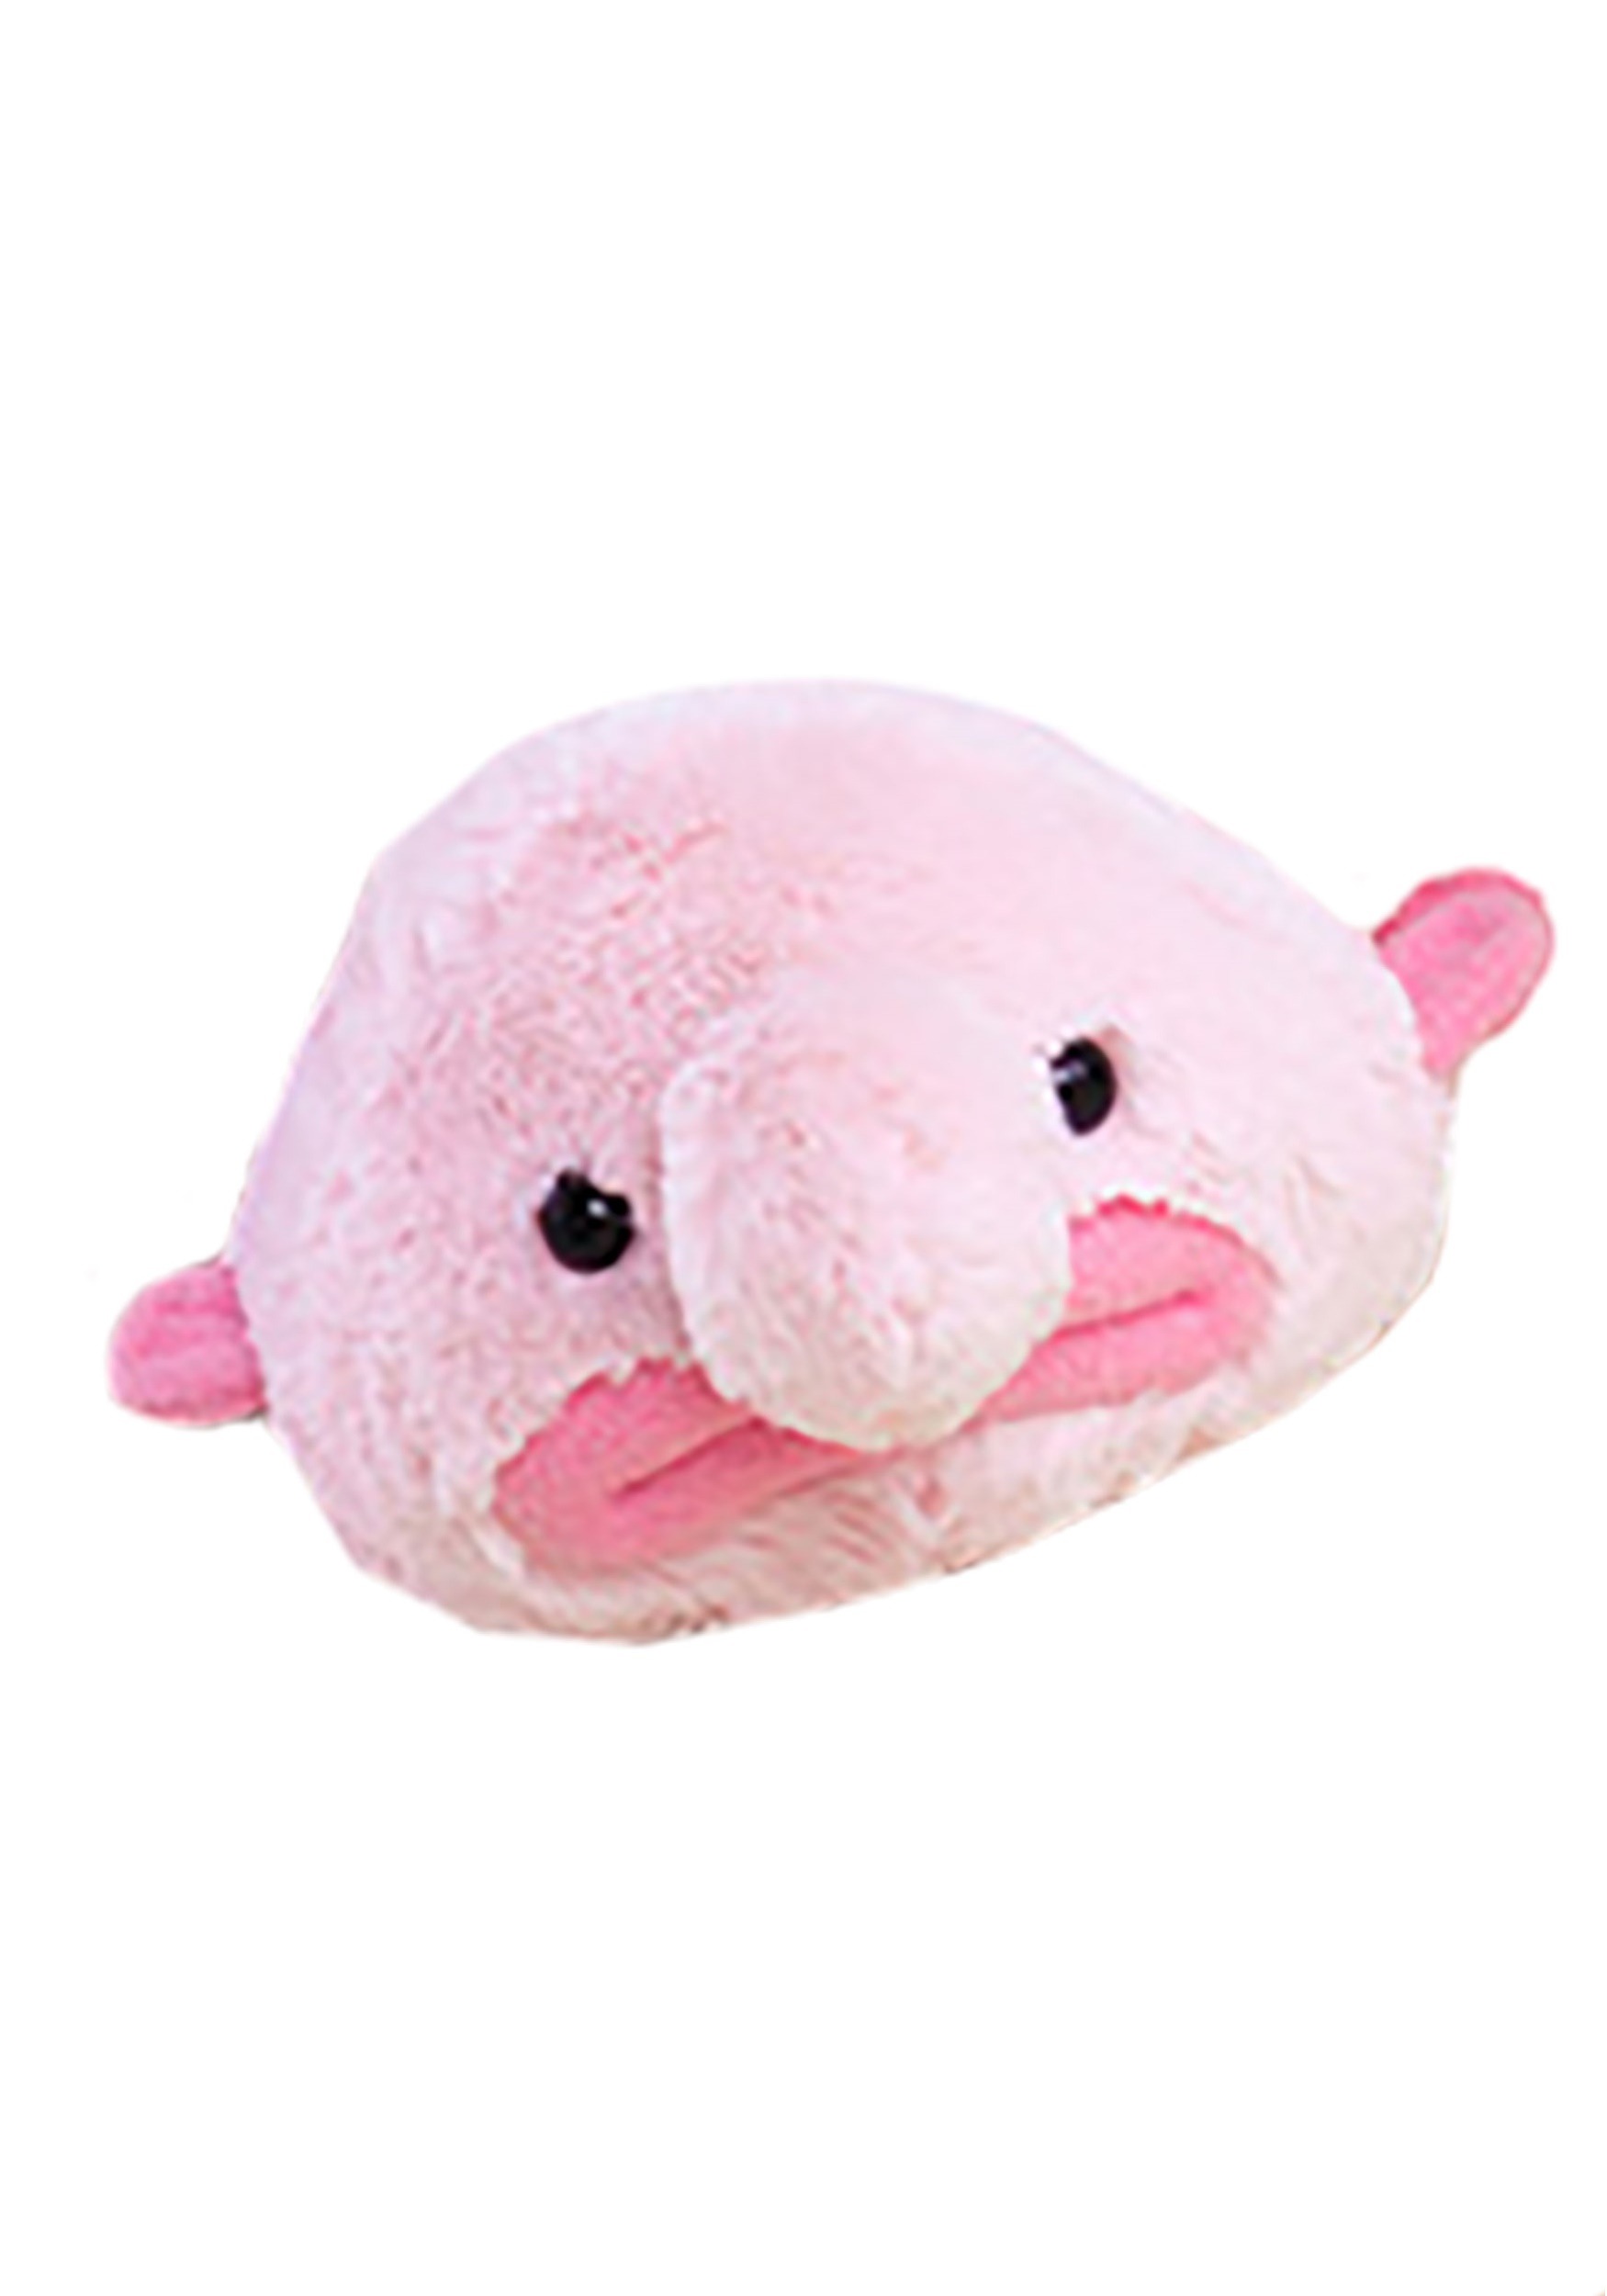 stuffed blobfish plush